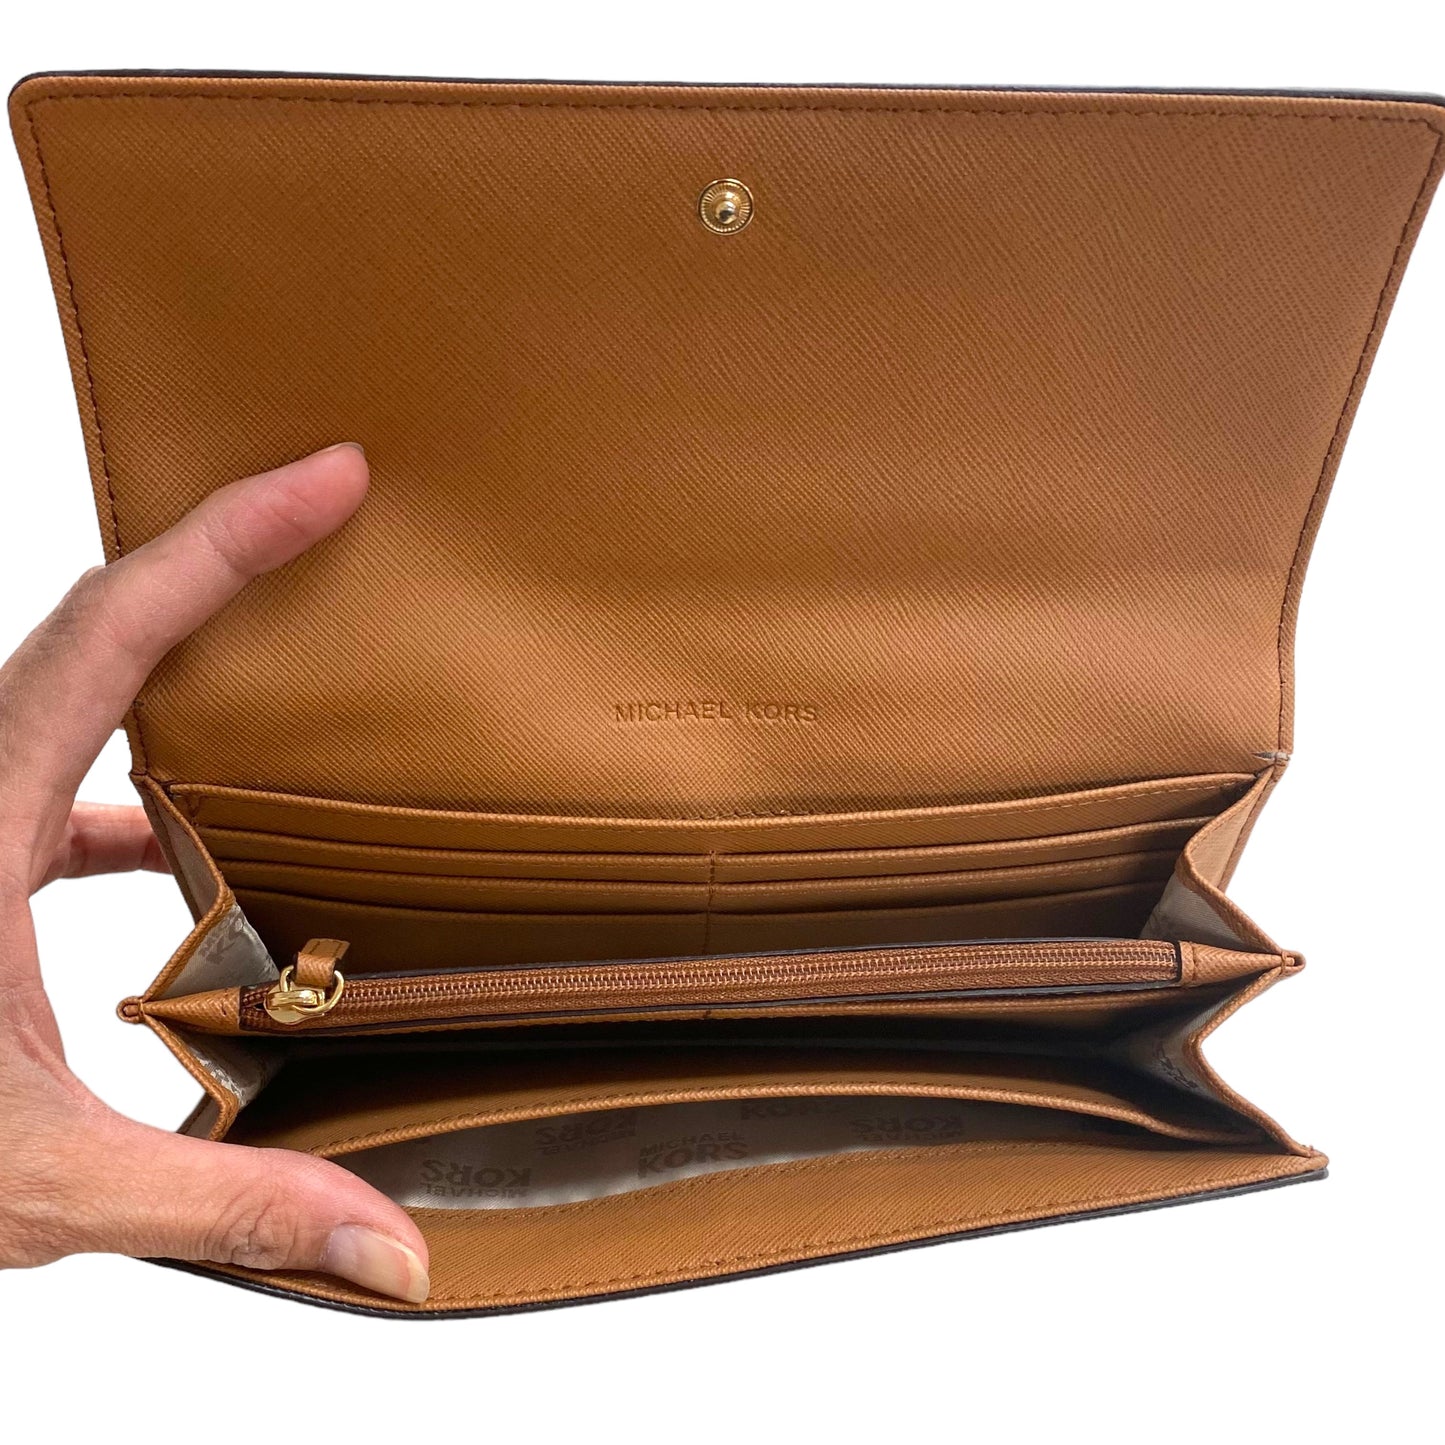 Wallet Designer Michael Kors, Size Large